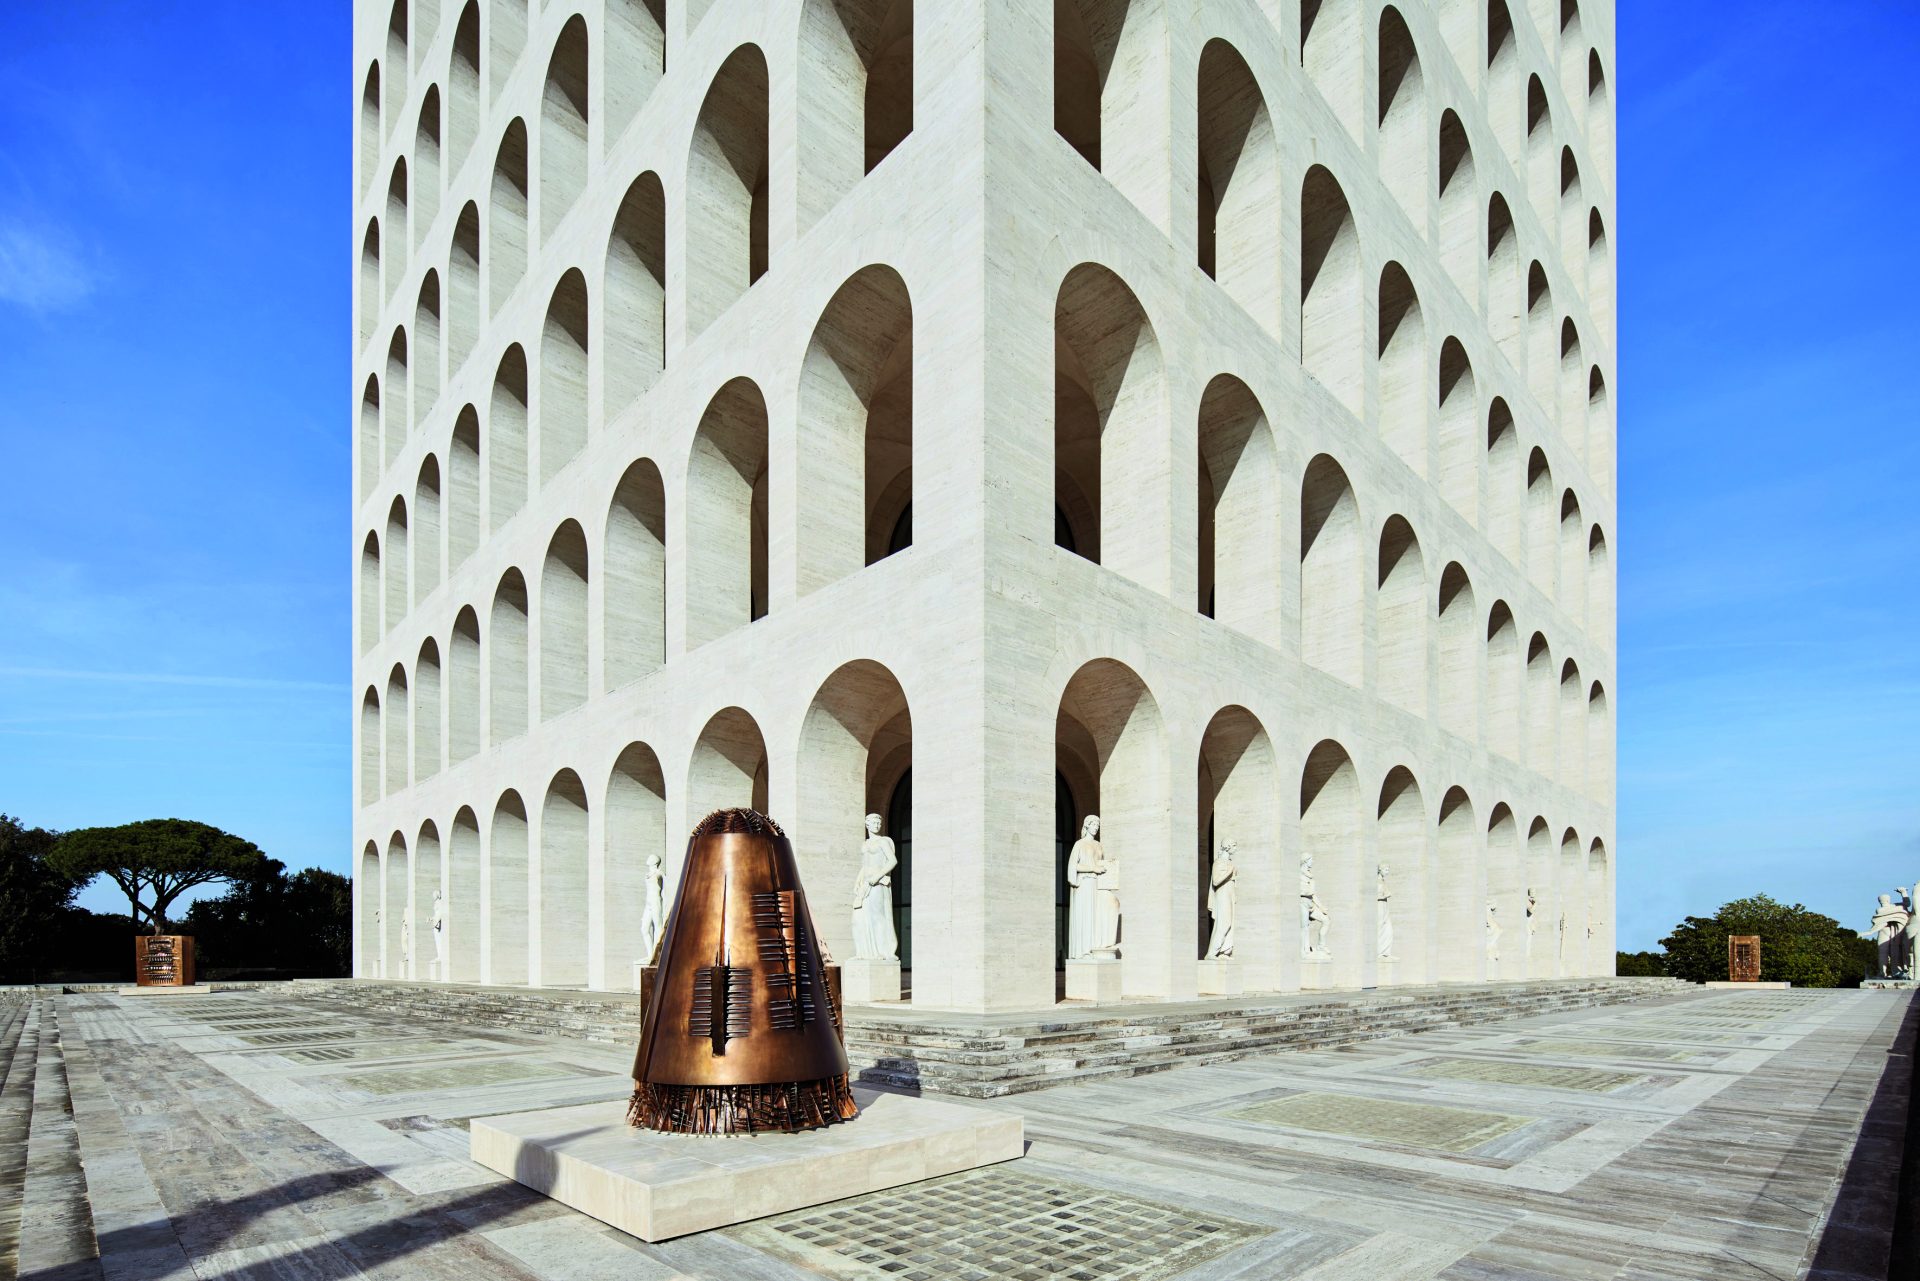 palazzo fendi omotesando modernizes classic roman architecture and